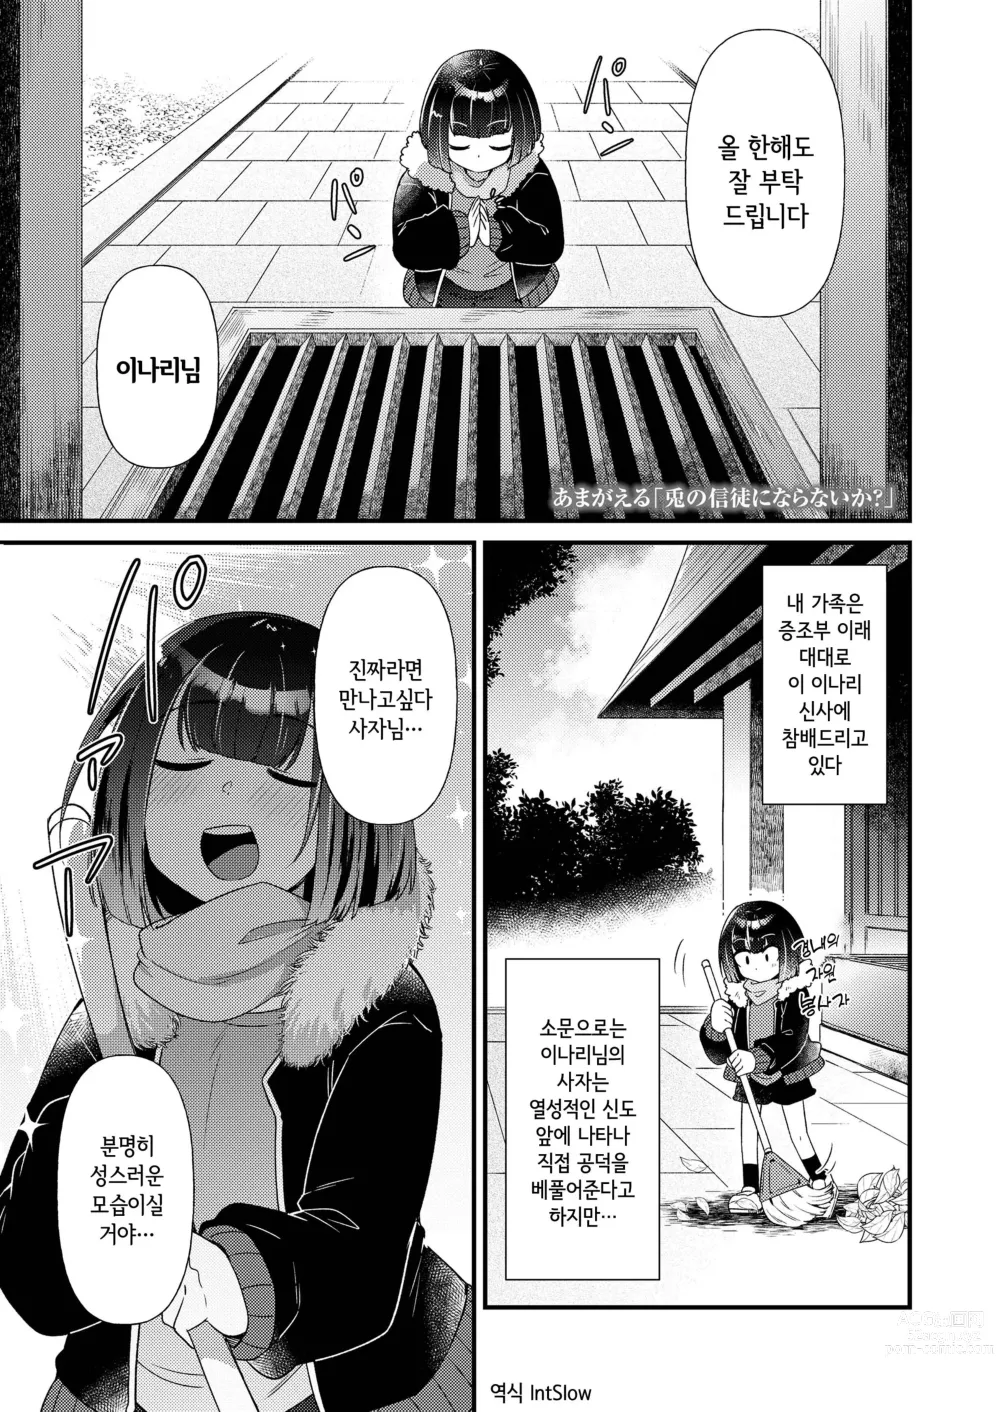 Page 1 of doujinshi 토끼의 신도가 되지 않겠는가?